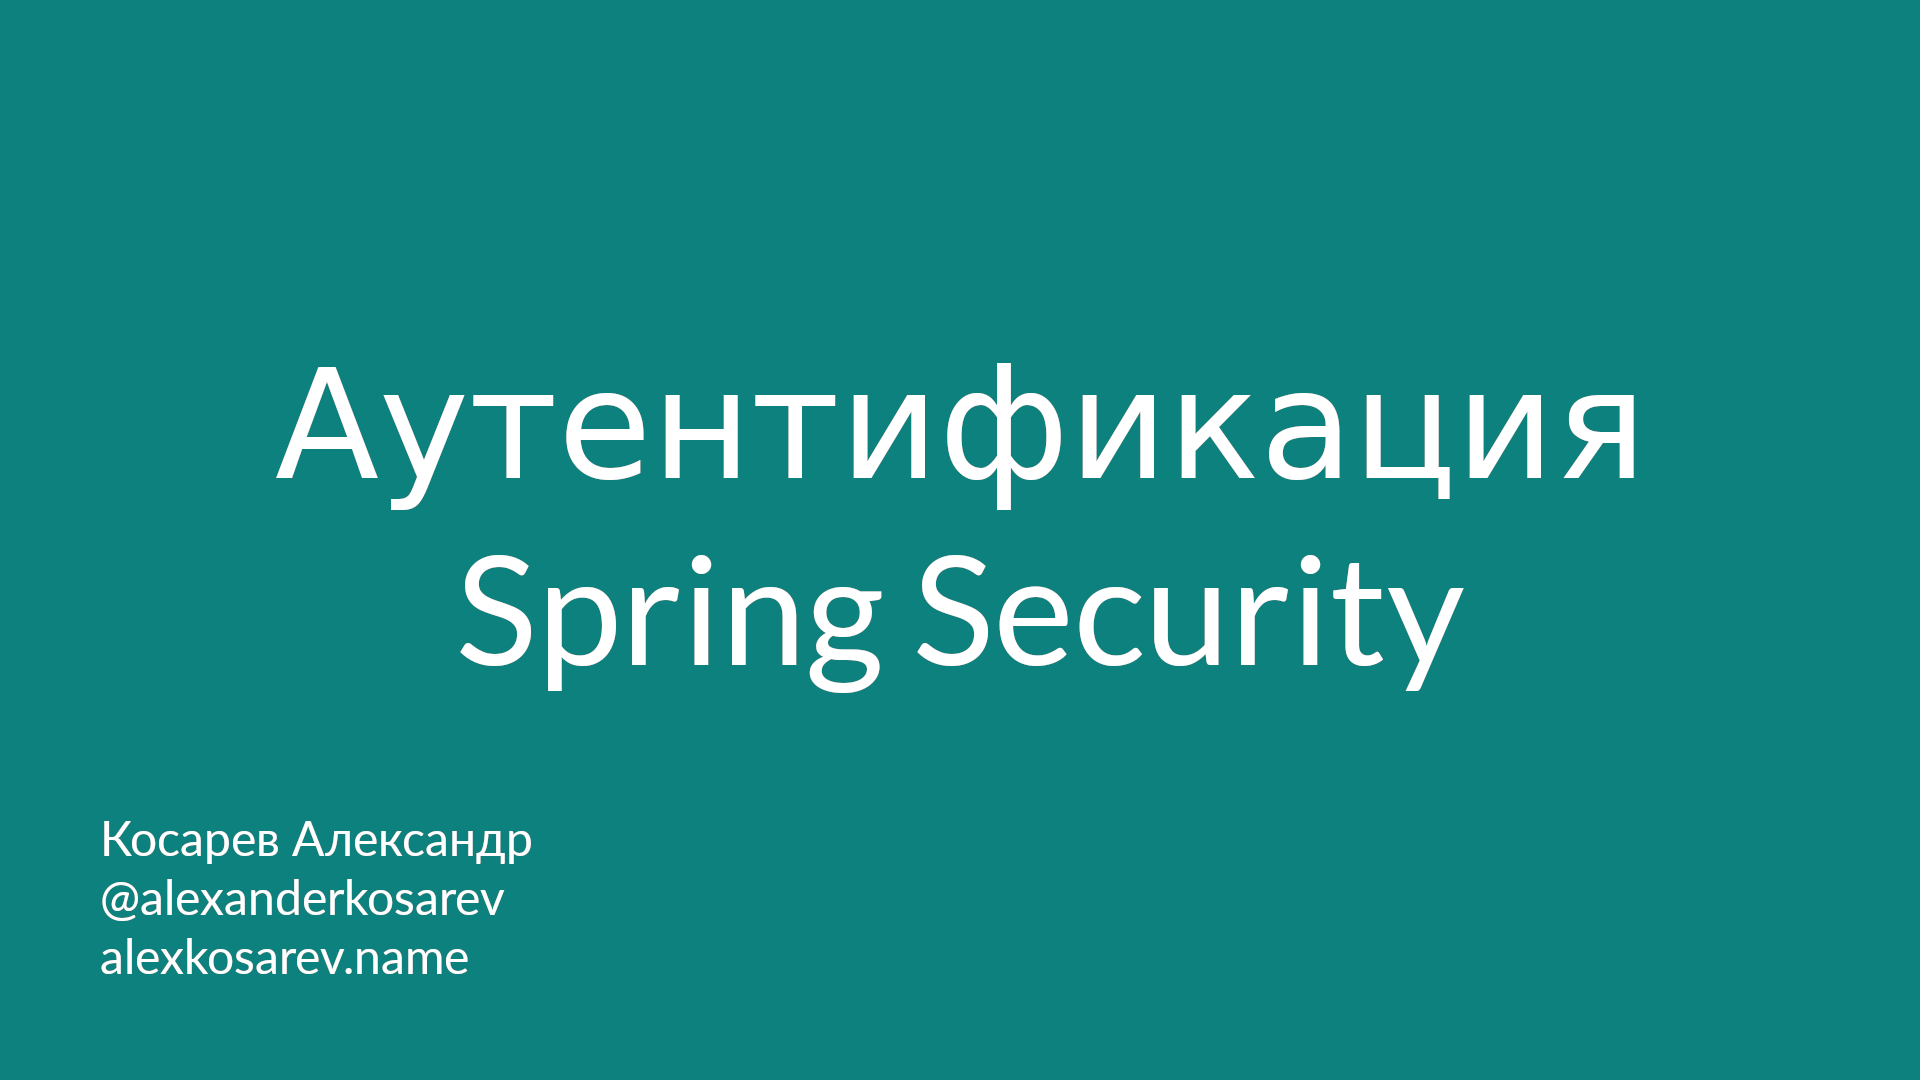 Аутентификация - Spring Security в деталях